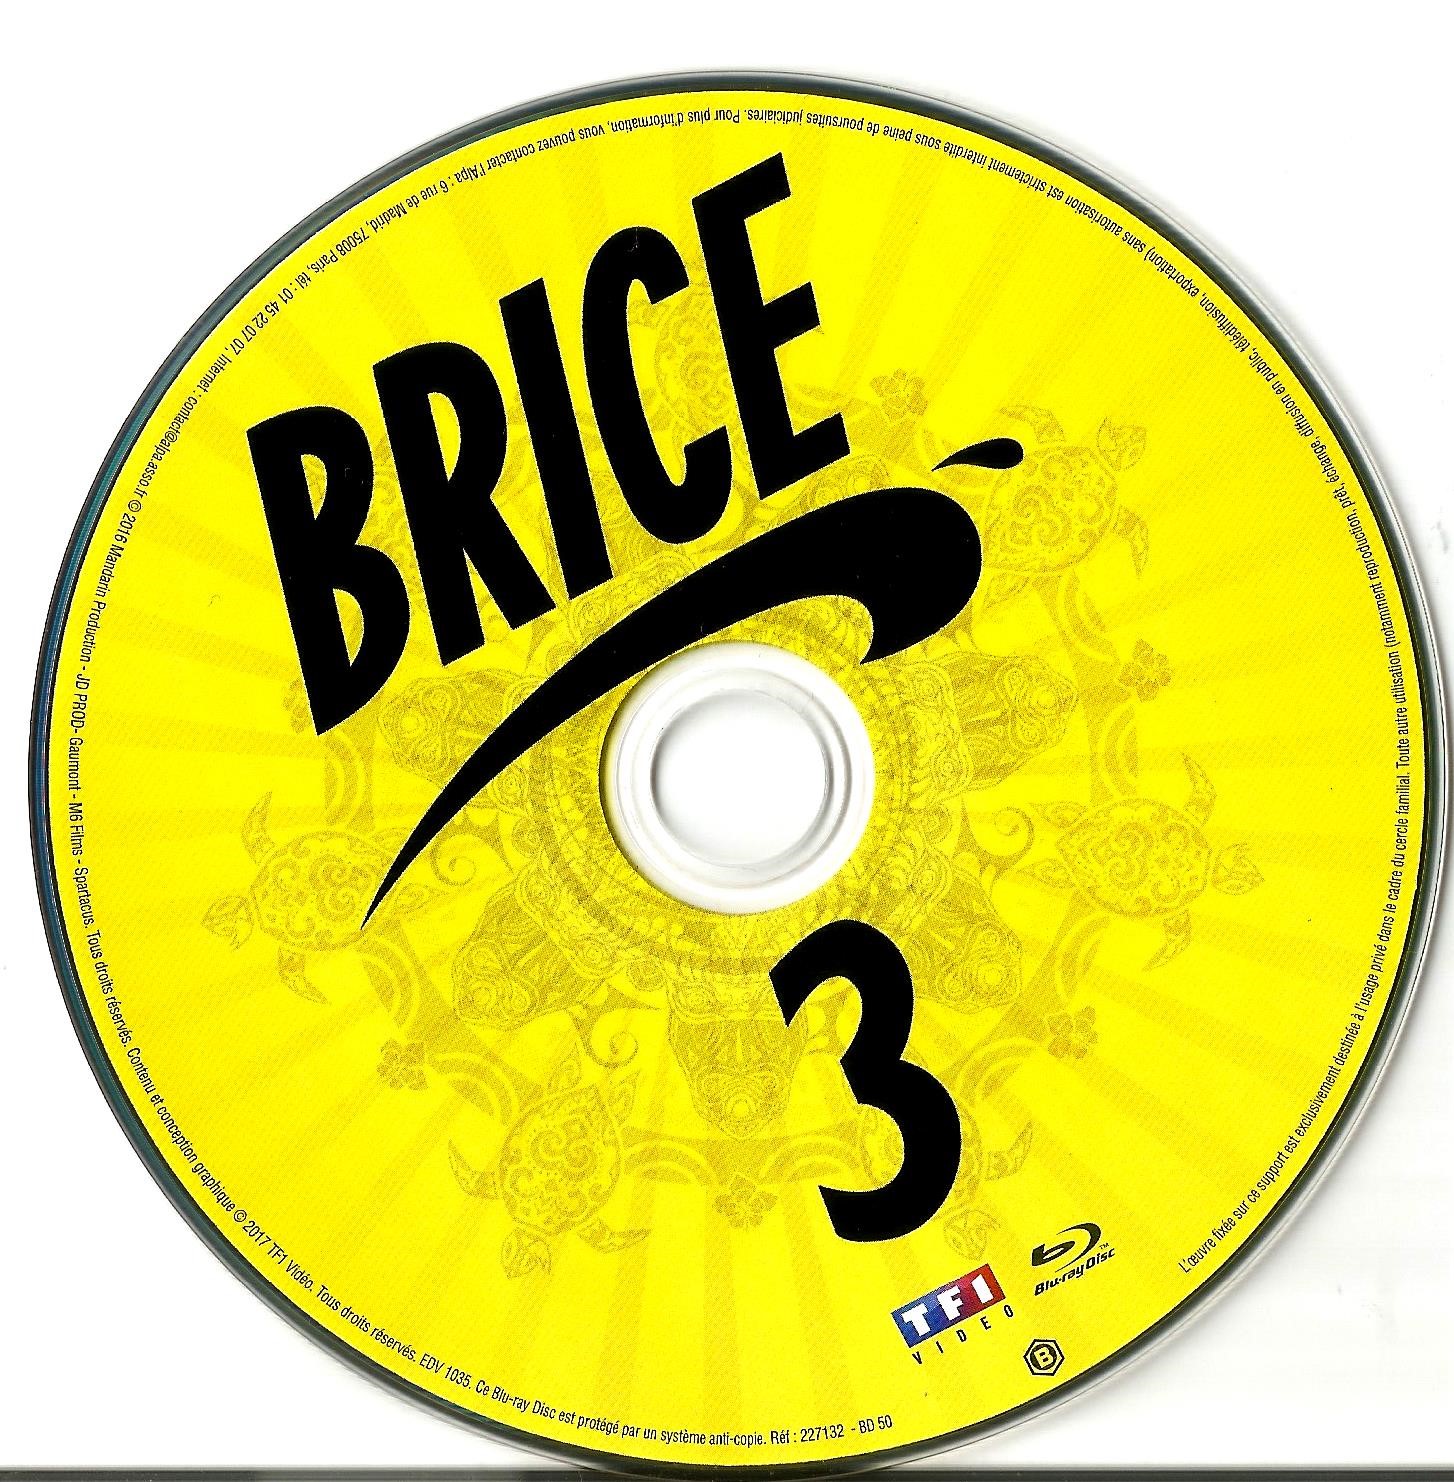 Brice 3 (BLU-RAY)